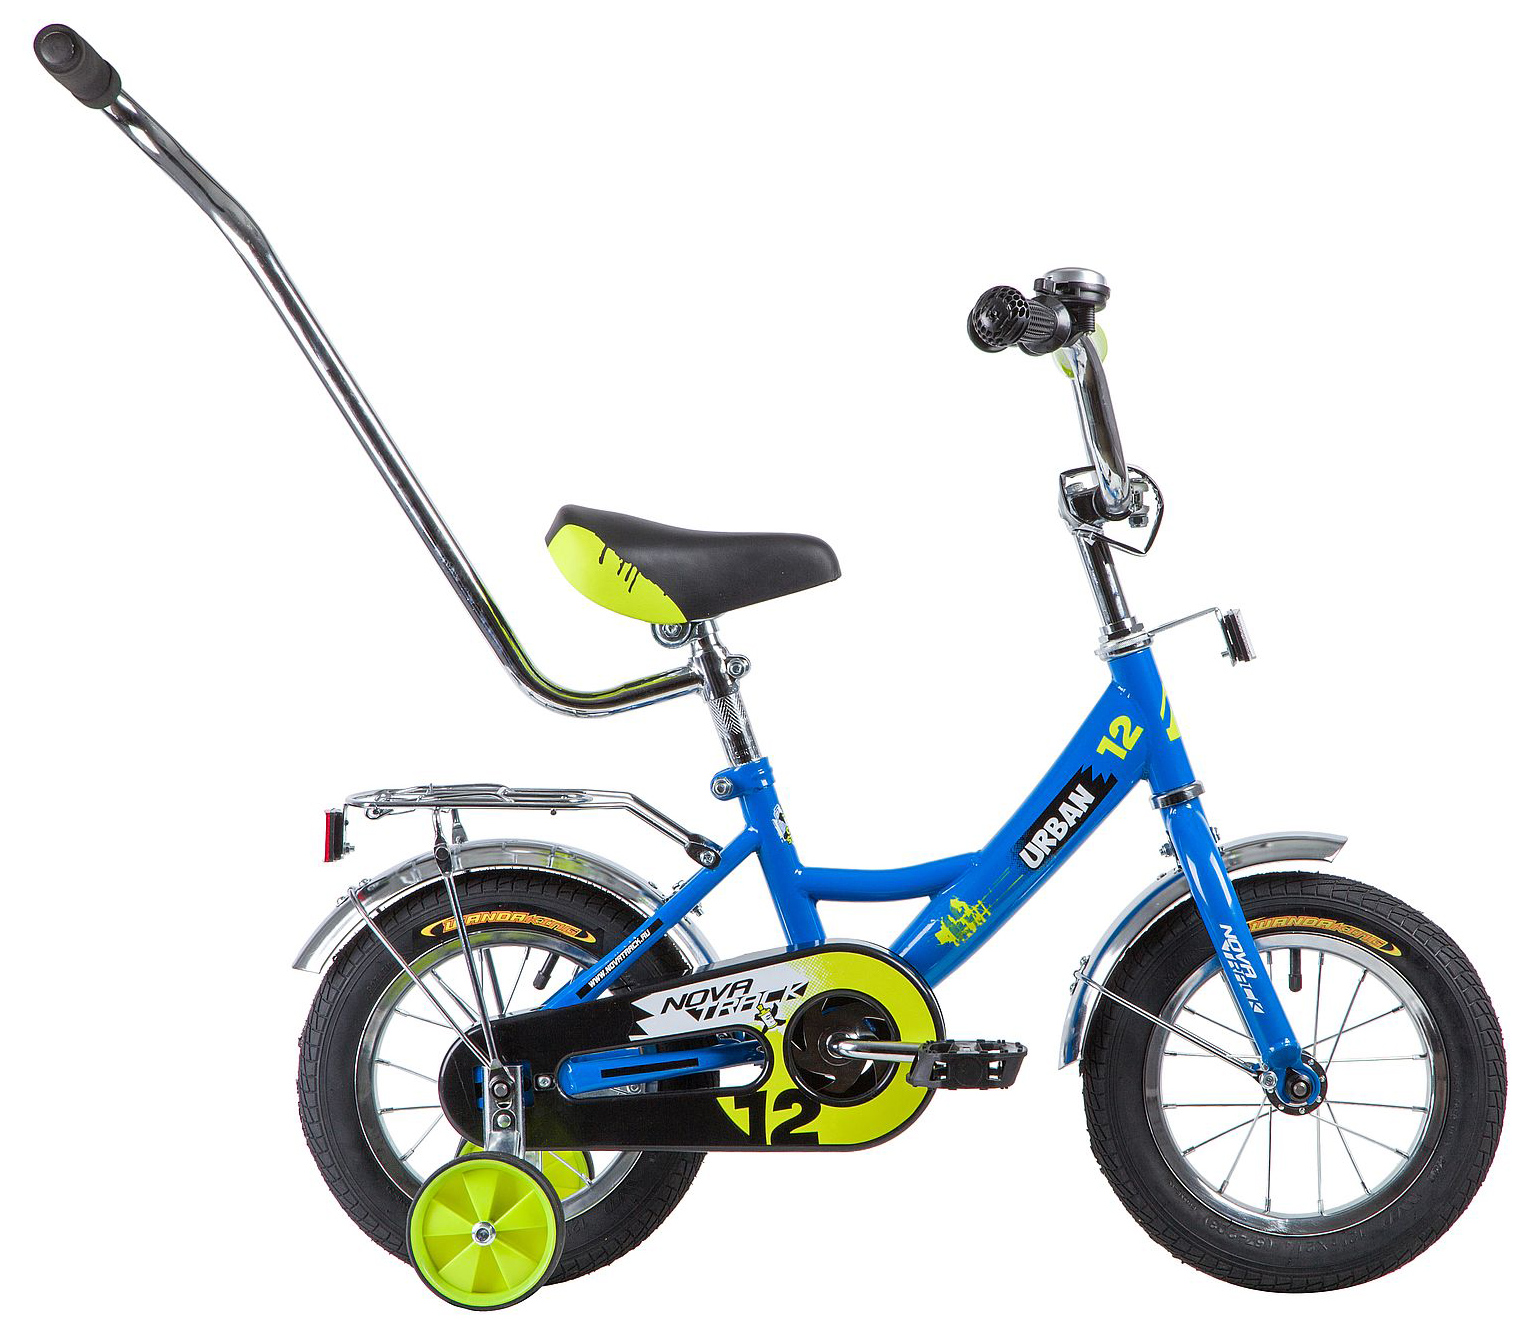  Велосипед трехколесный детский велосипед Novatrack Urban 12 2019